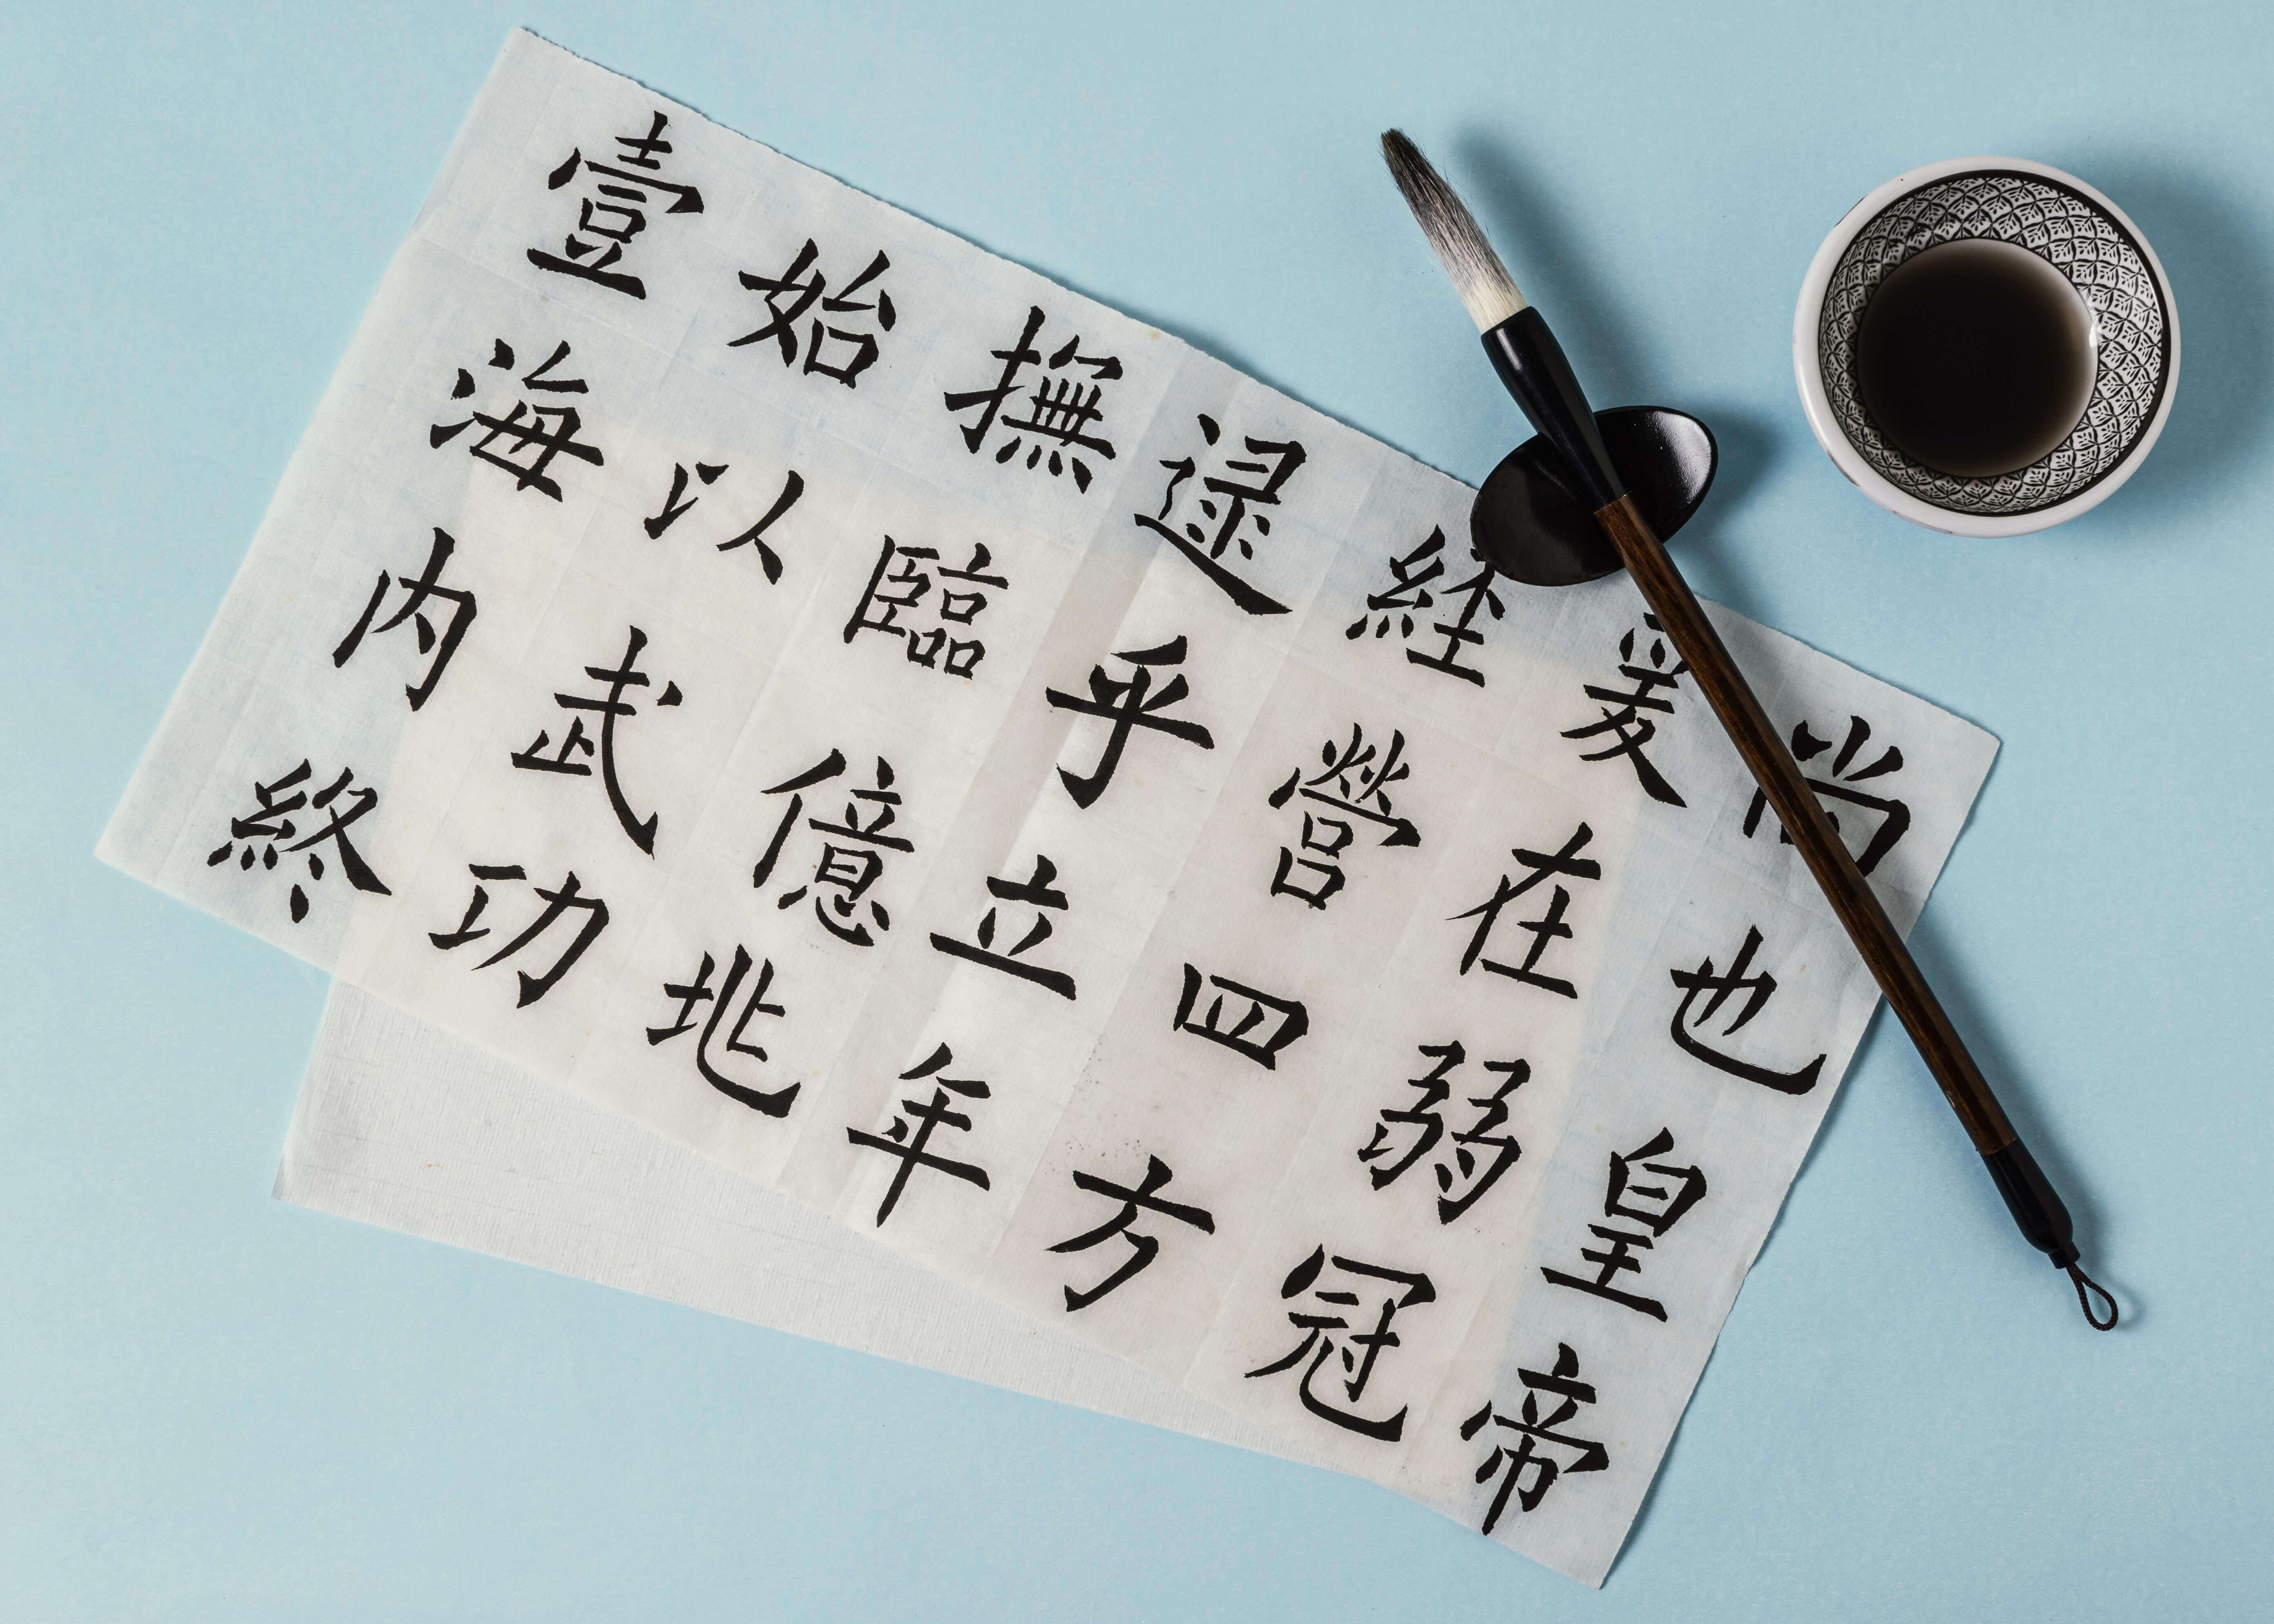 Изучения иероглифы. Китайский язык. Китайский язык учить. Китайская каллиграфия с переводом. Китайский язык учеба.